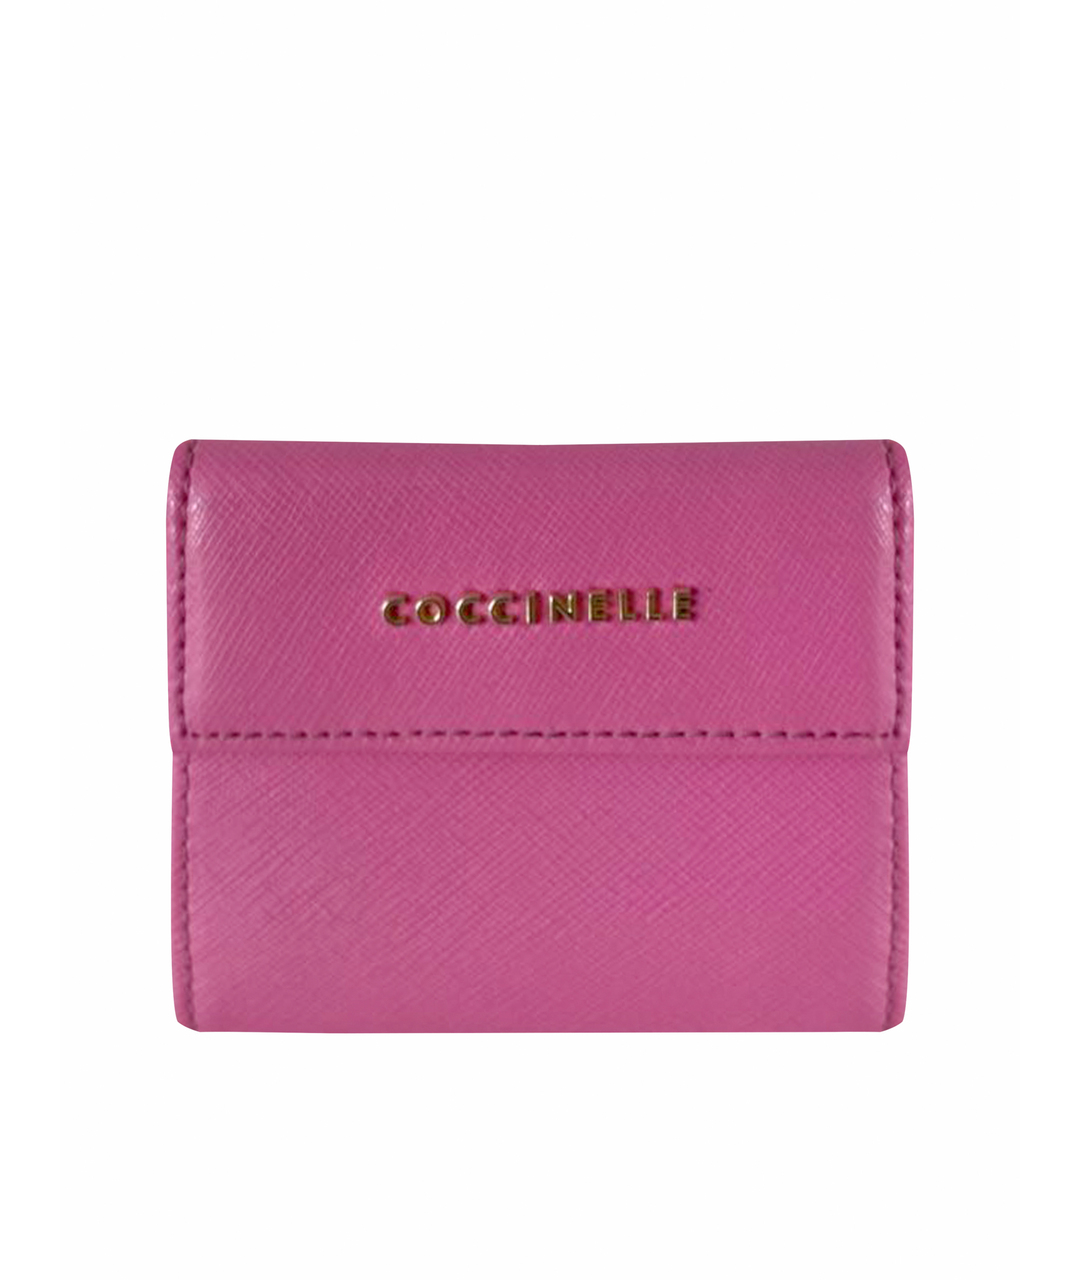 COCCINELLE Розовый кожаный кошелек, фото 1